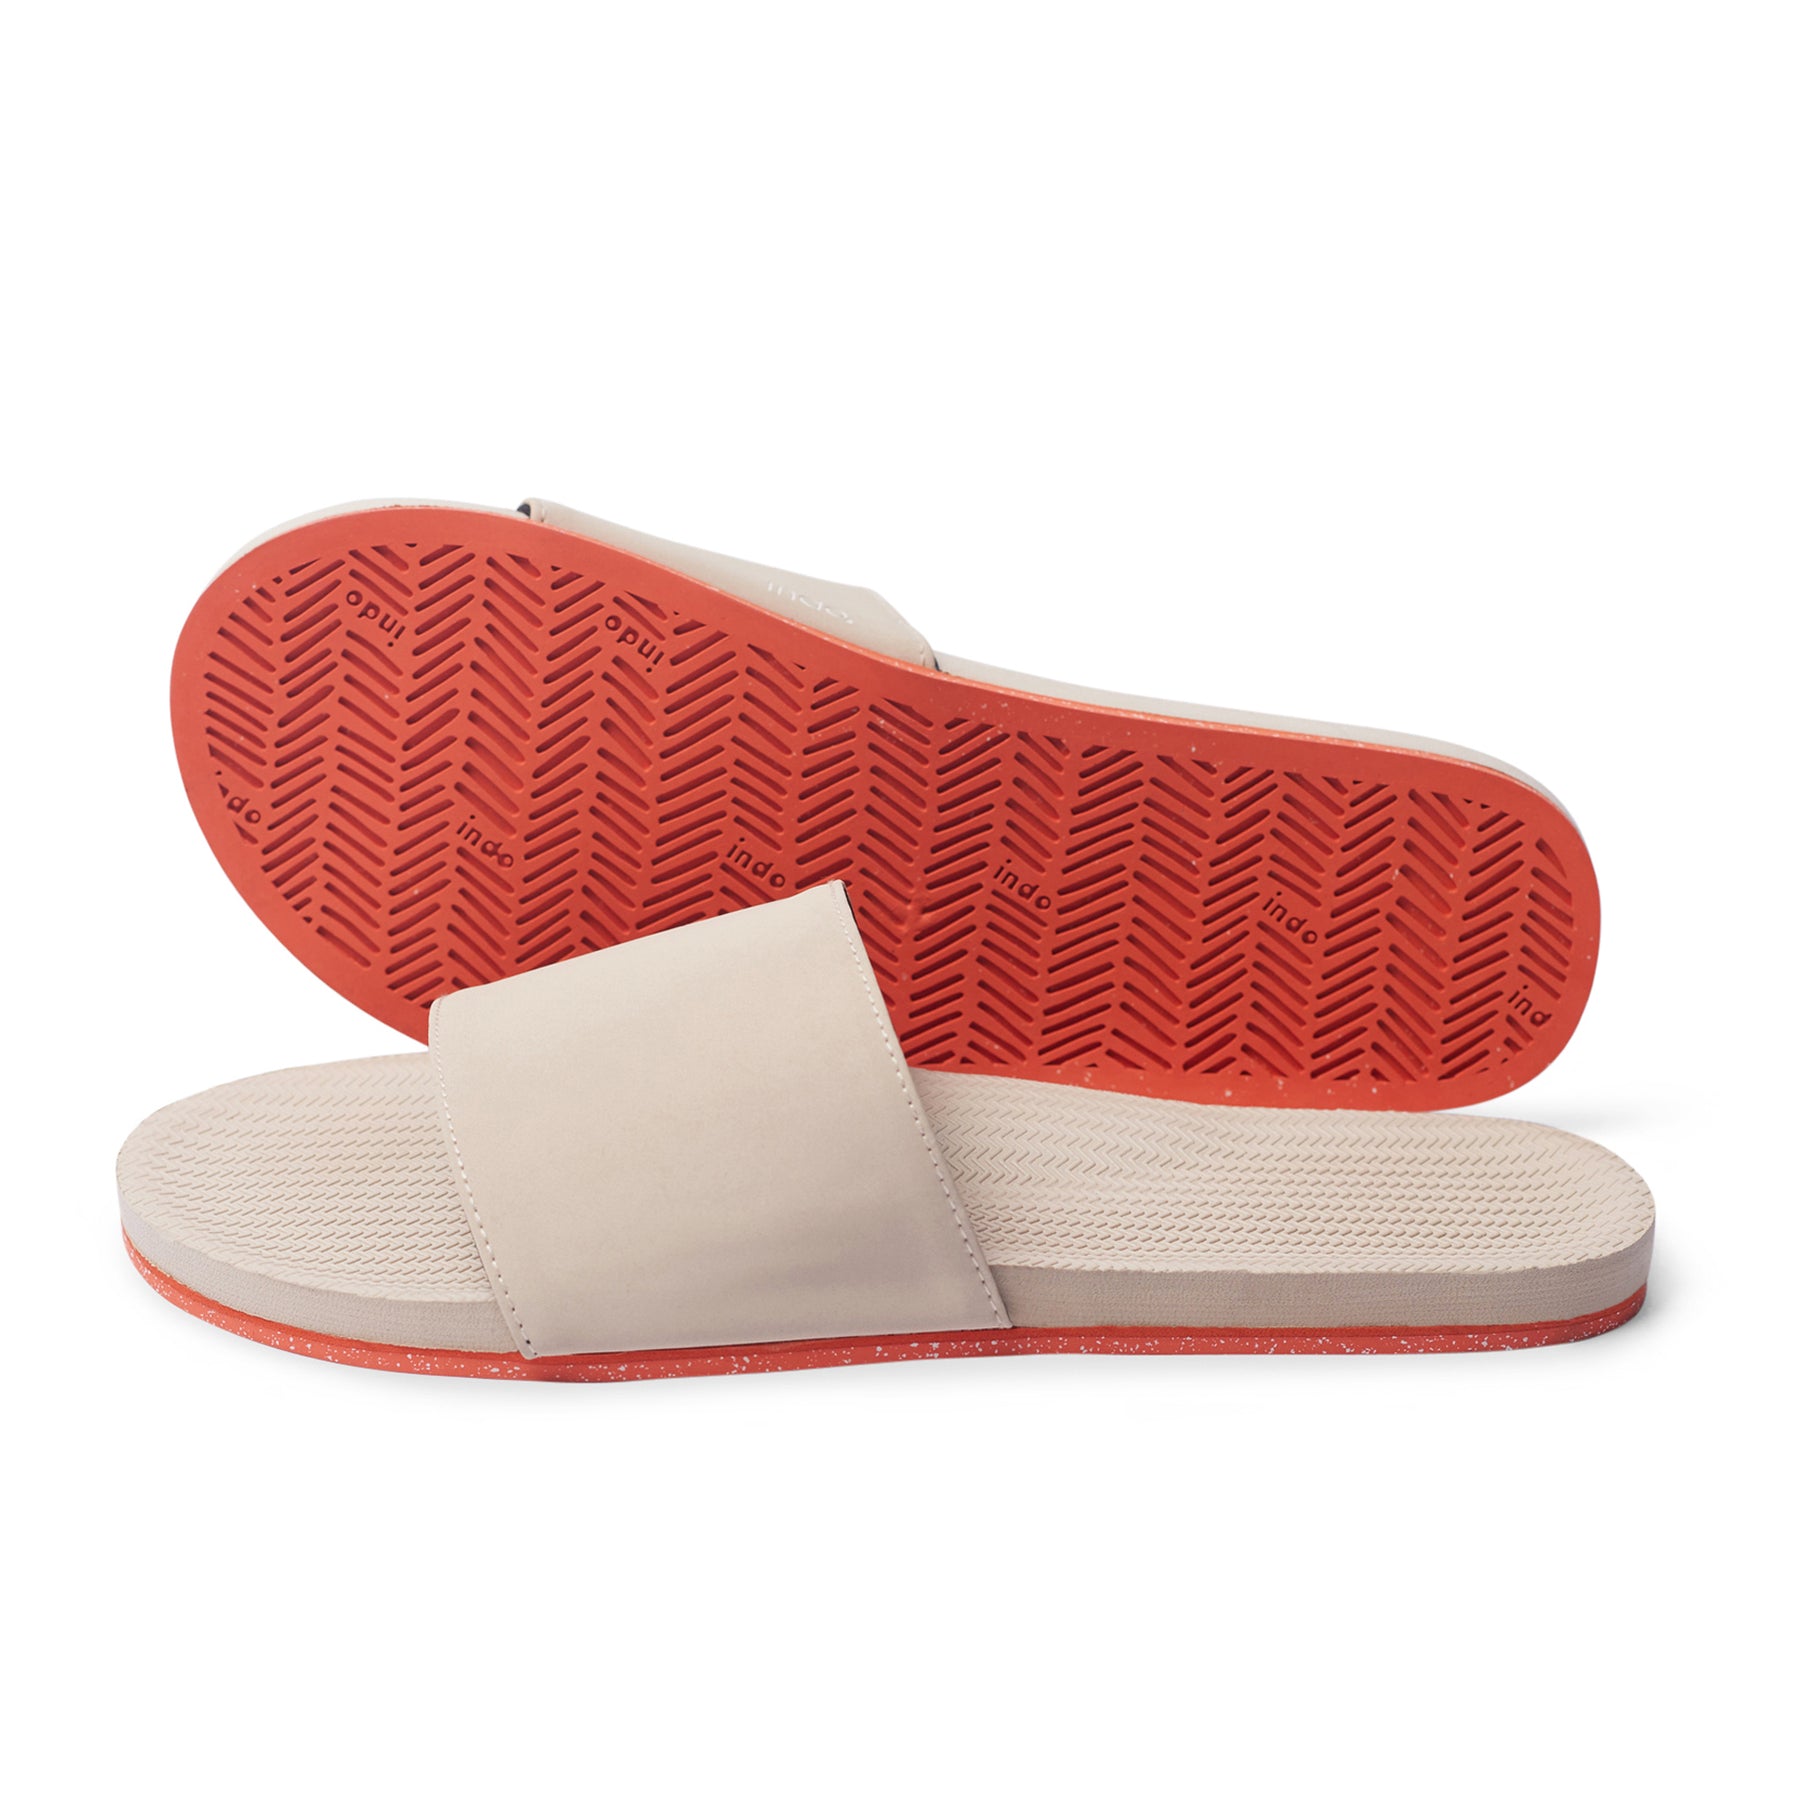 Women’s Slides Sneaker Sole - Sea Salt/Orange Sole